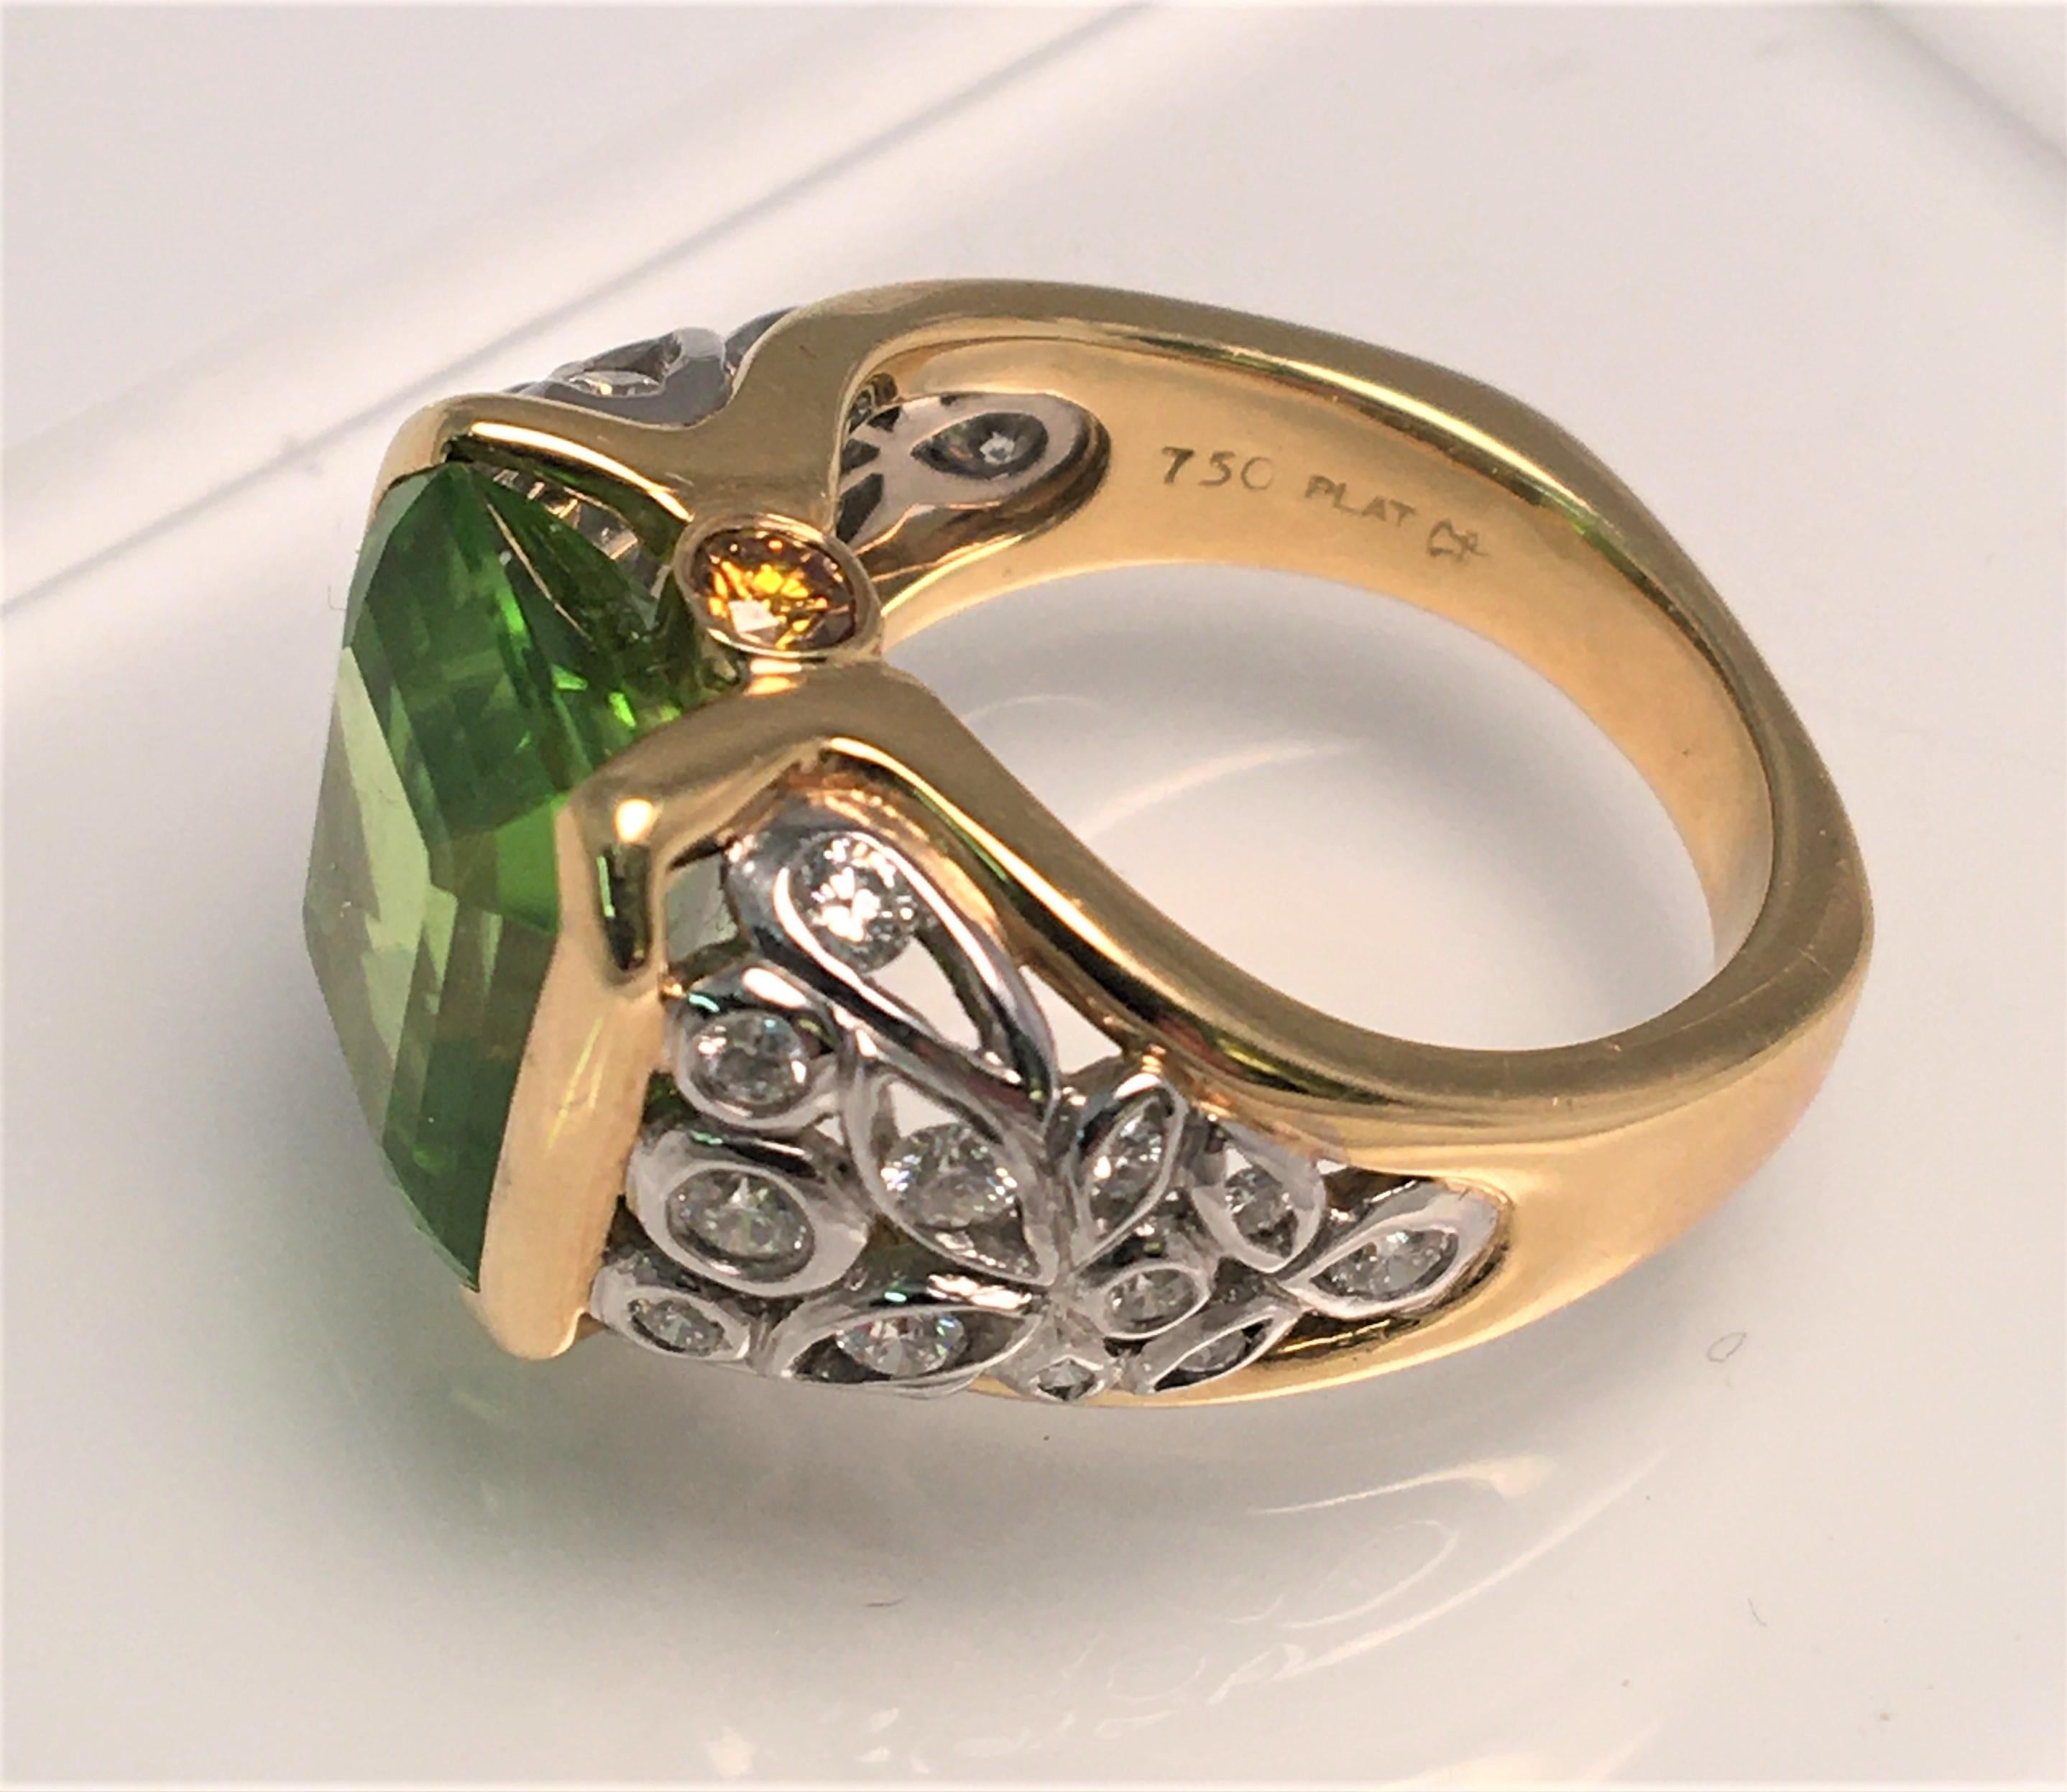 Par le designer Richard Krementz, connu pour sa haute qualité et ses pierres exceptionnelles.
Cette bague attire l'attention !  Son magnifique péridot de couleur verte est complété par une monture en platine, or jaune 18 carats et diamant.
Péridot